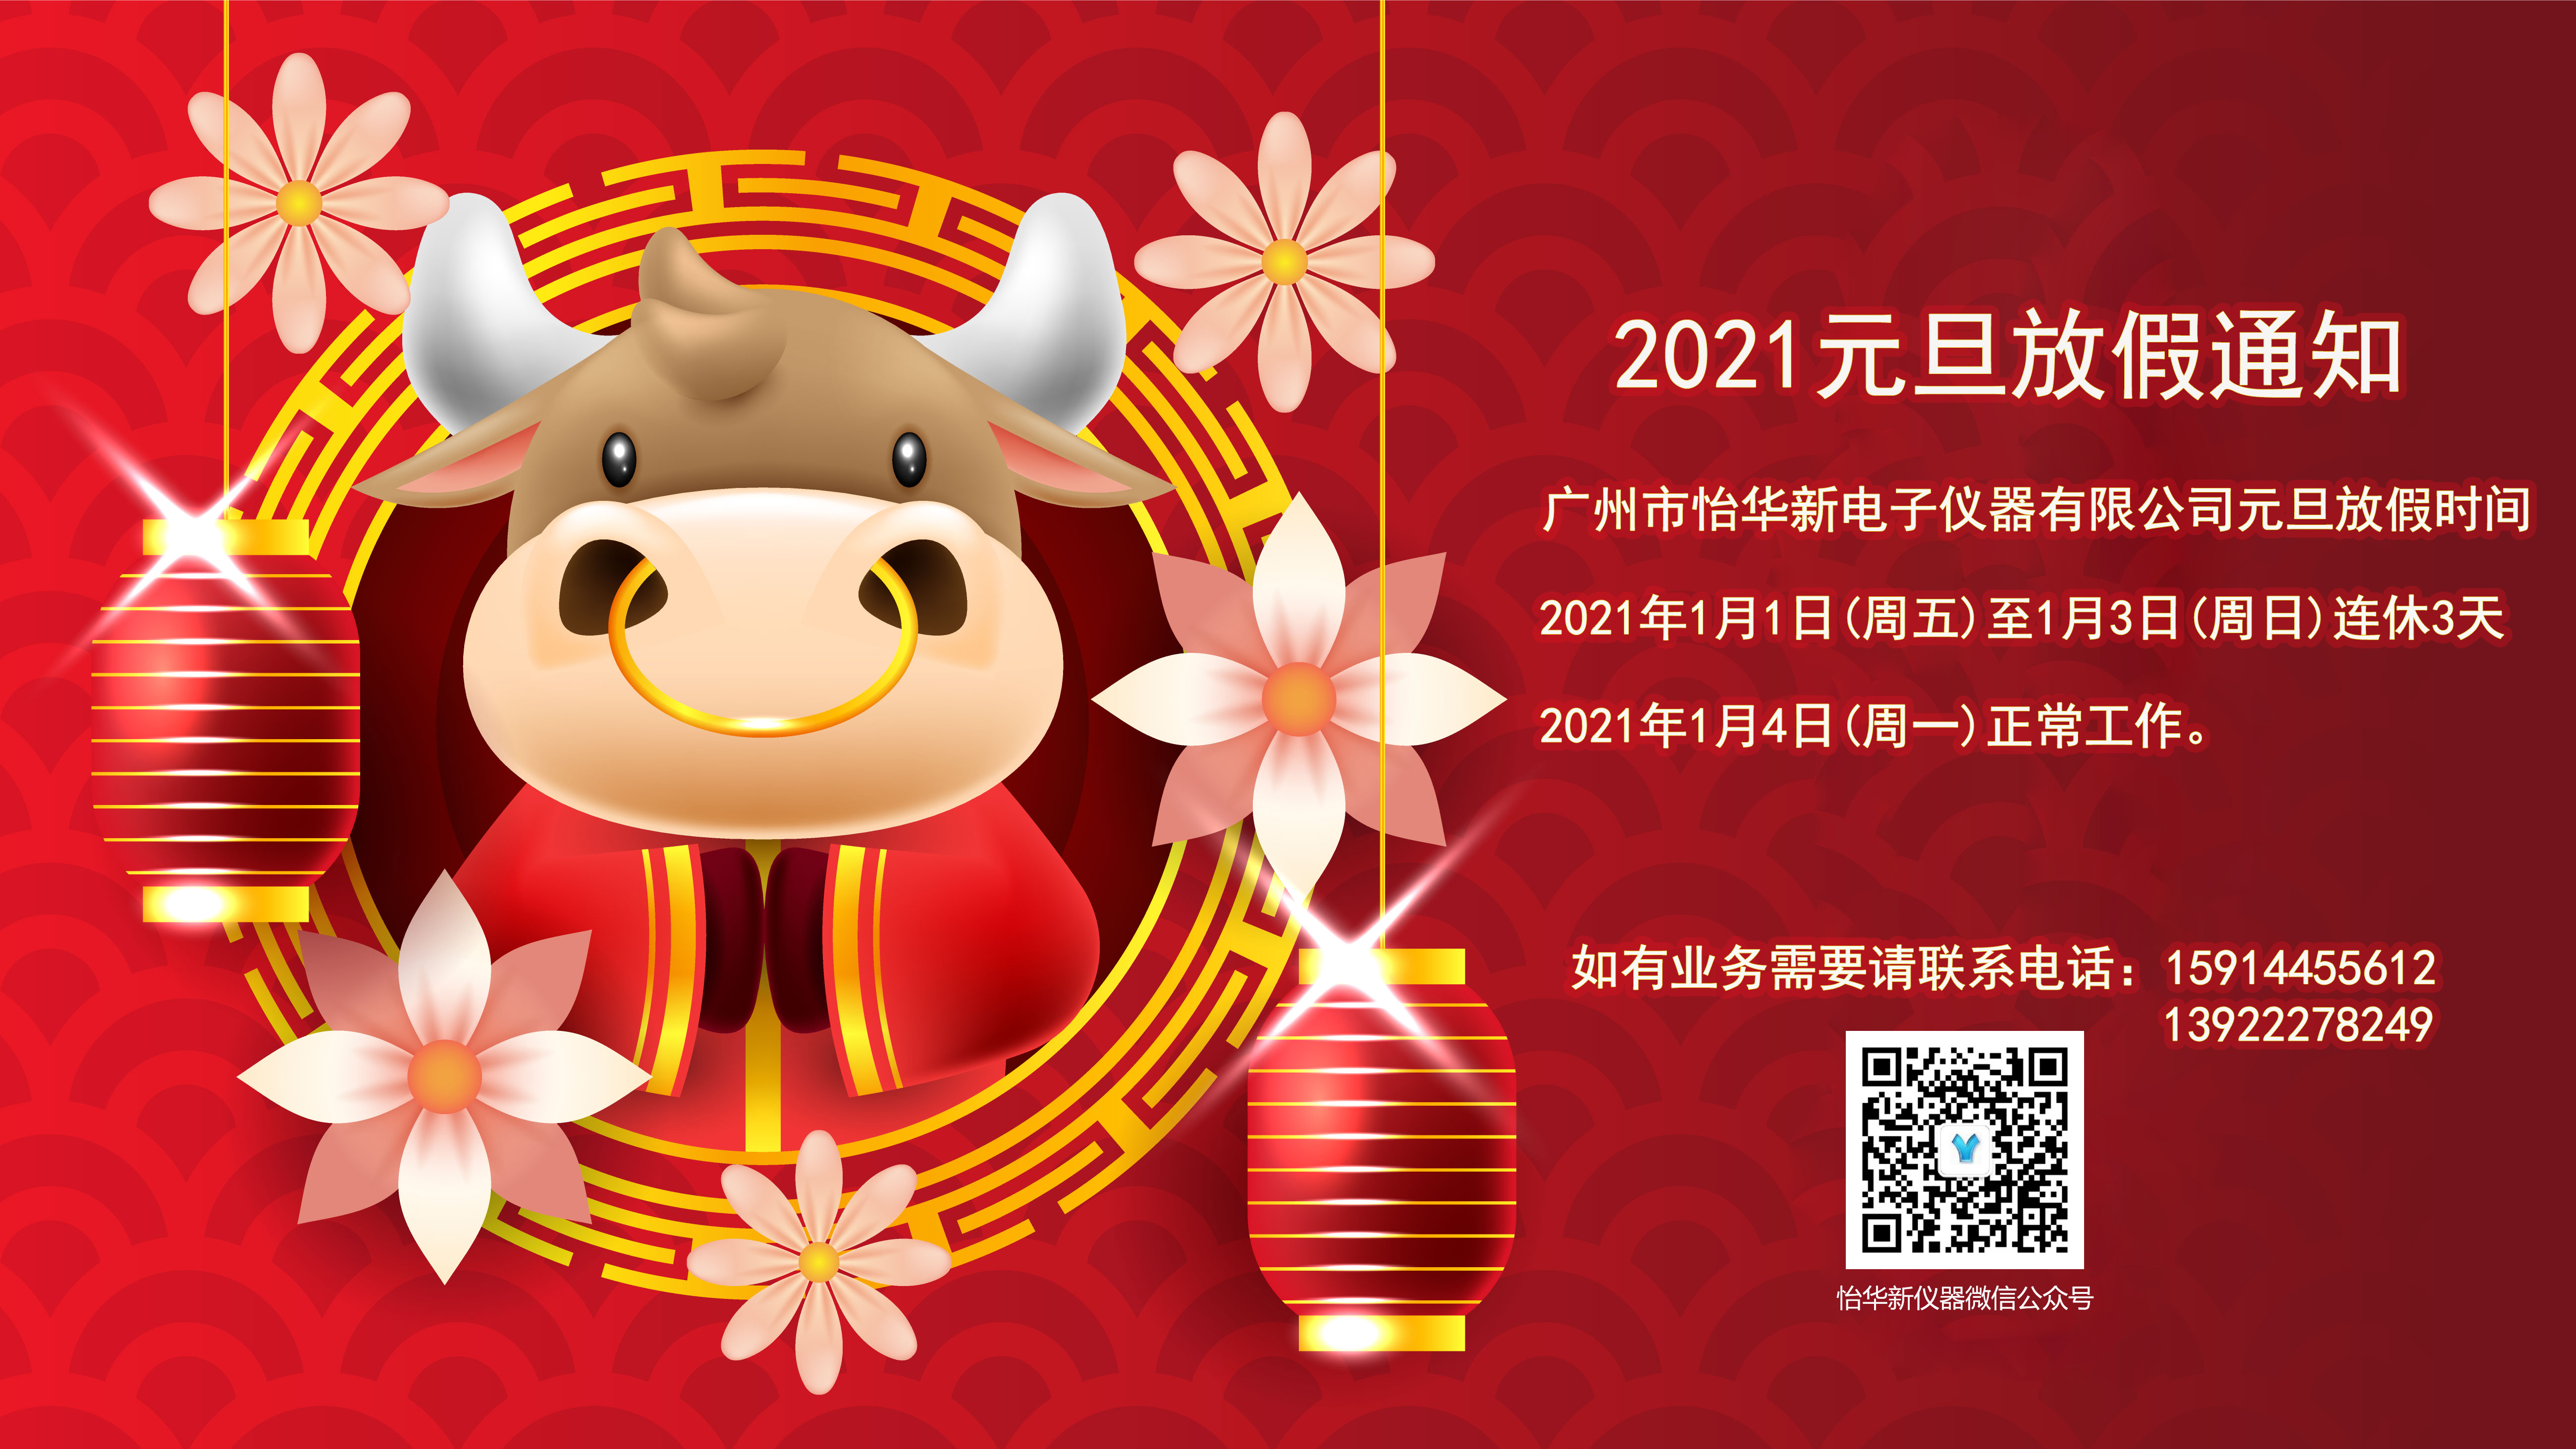 2021年元旦放假通知--广州市怡华新电子仪器有限公司